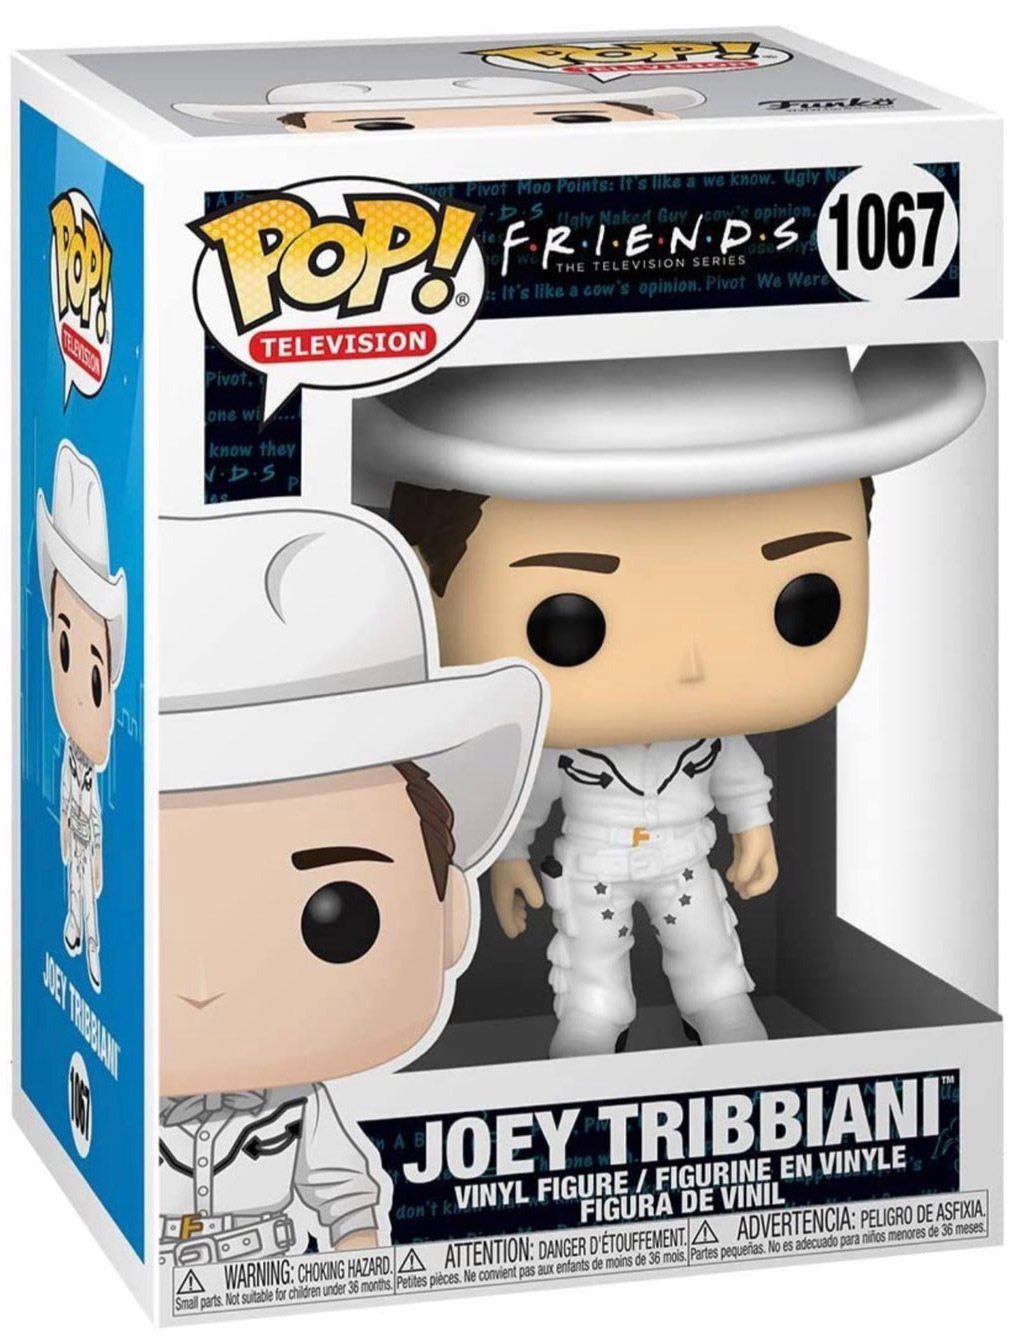 Figurine Pop Friends #1067 pas cher : Joey Tribbiani